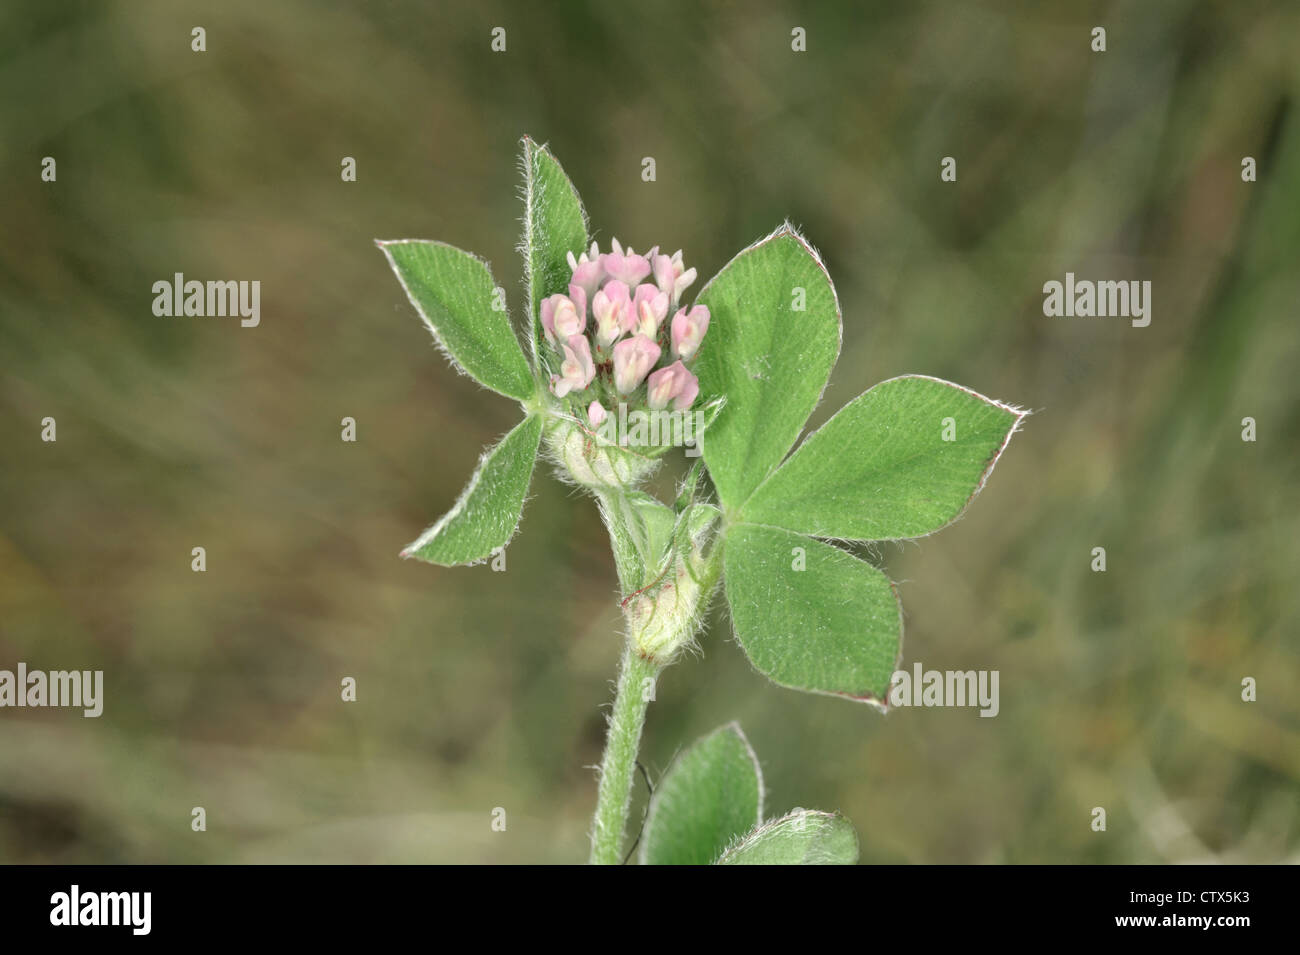 KNOTTED CLOVER Trifolium striatum (Fabaceae) Stock Photo